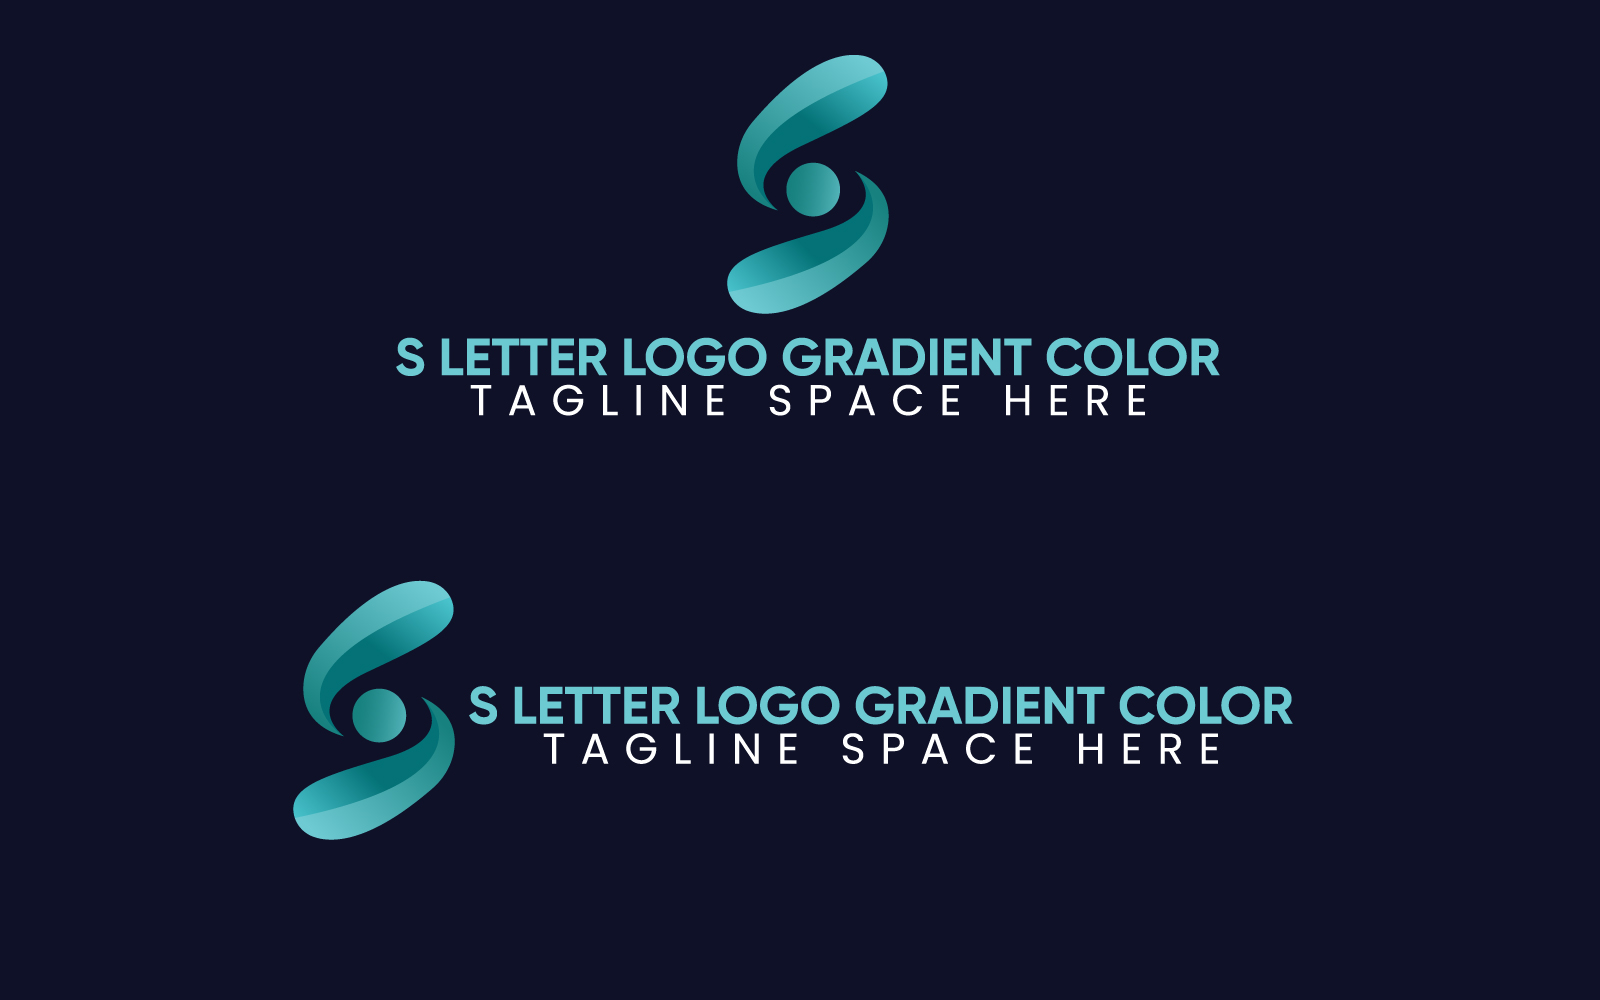 s letter logo gradient color jp 261